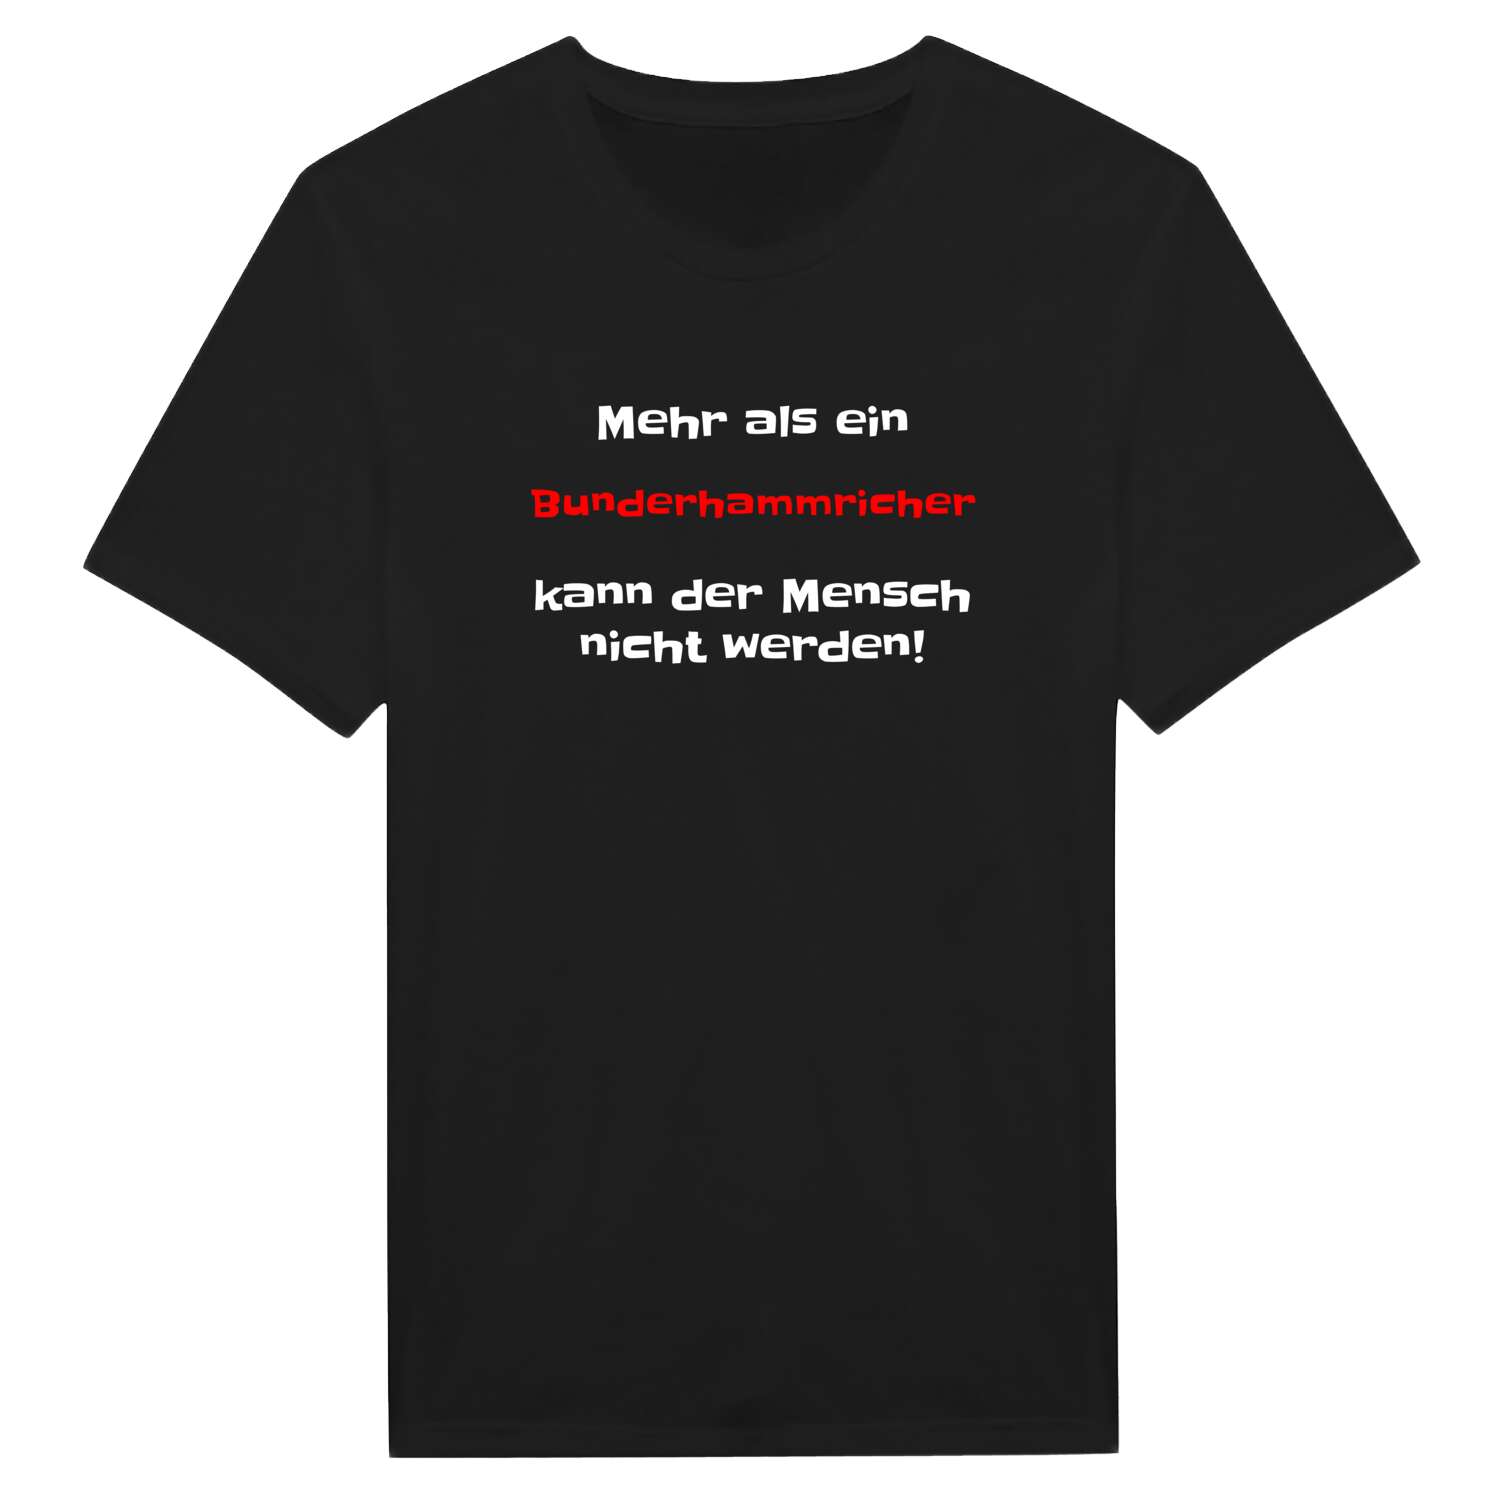 Bunderhammrich T-Shirt »Mehr als ein«